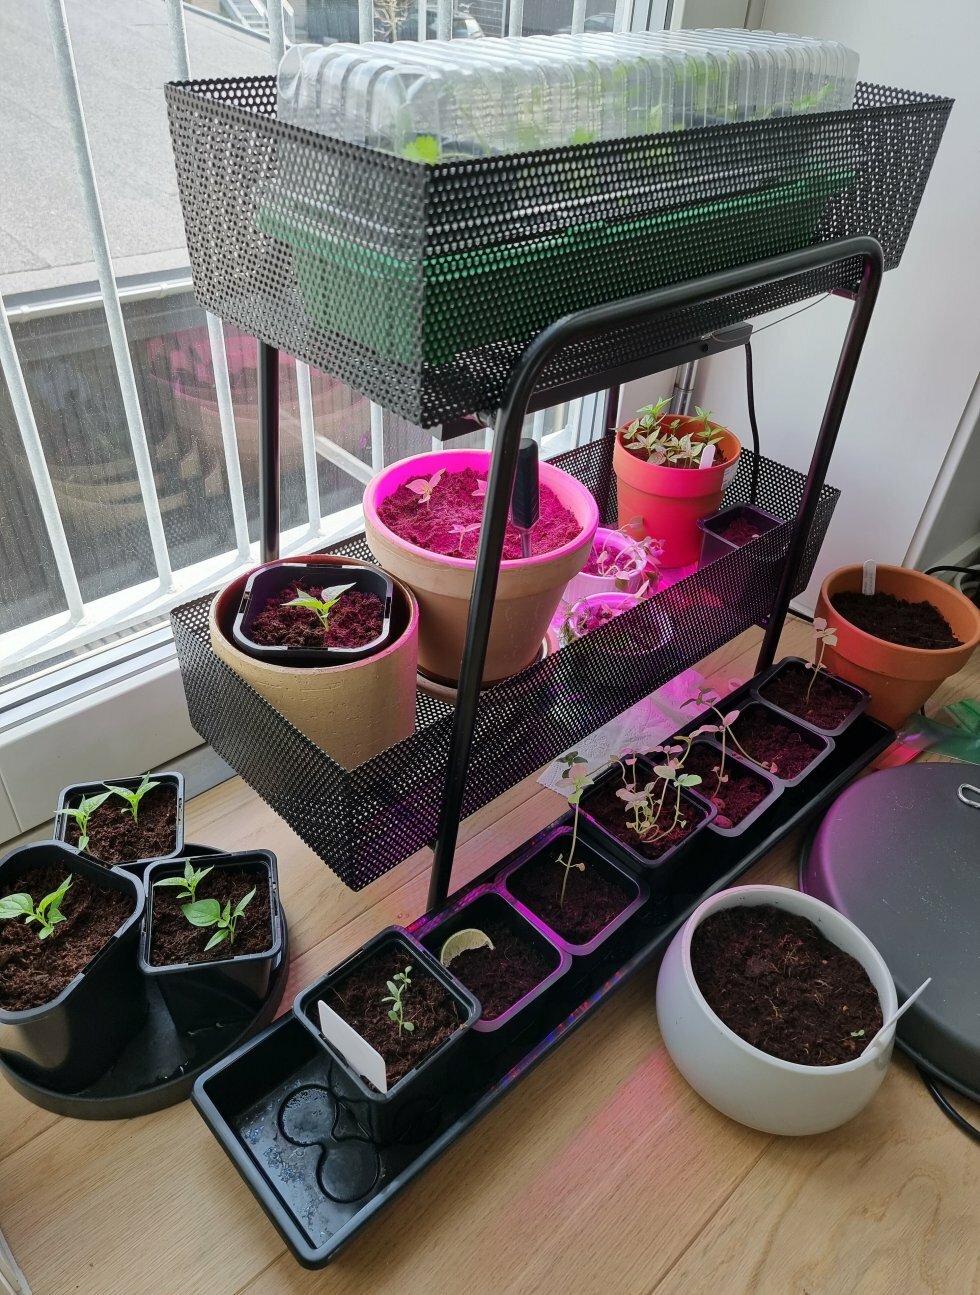 Marts er højsøæson for vinduesspirring hjemme hos mig - Guide: Sådan dyrker du saftige chili i din vindueskarm